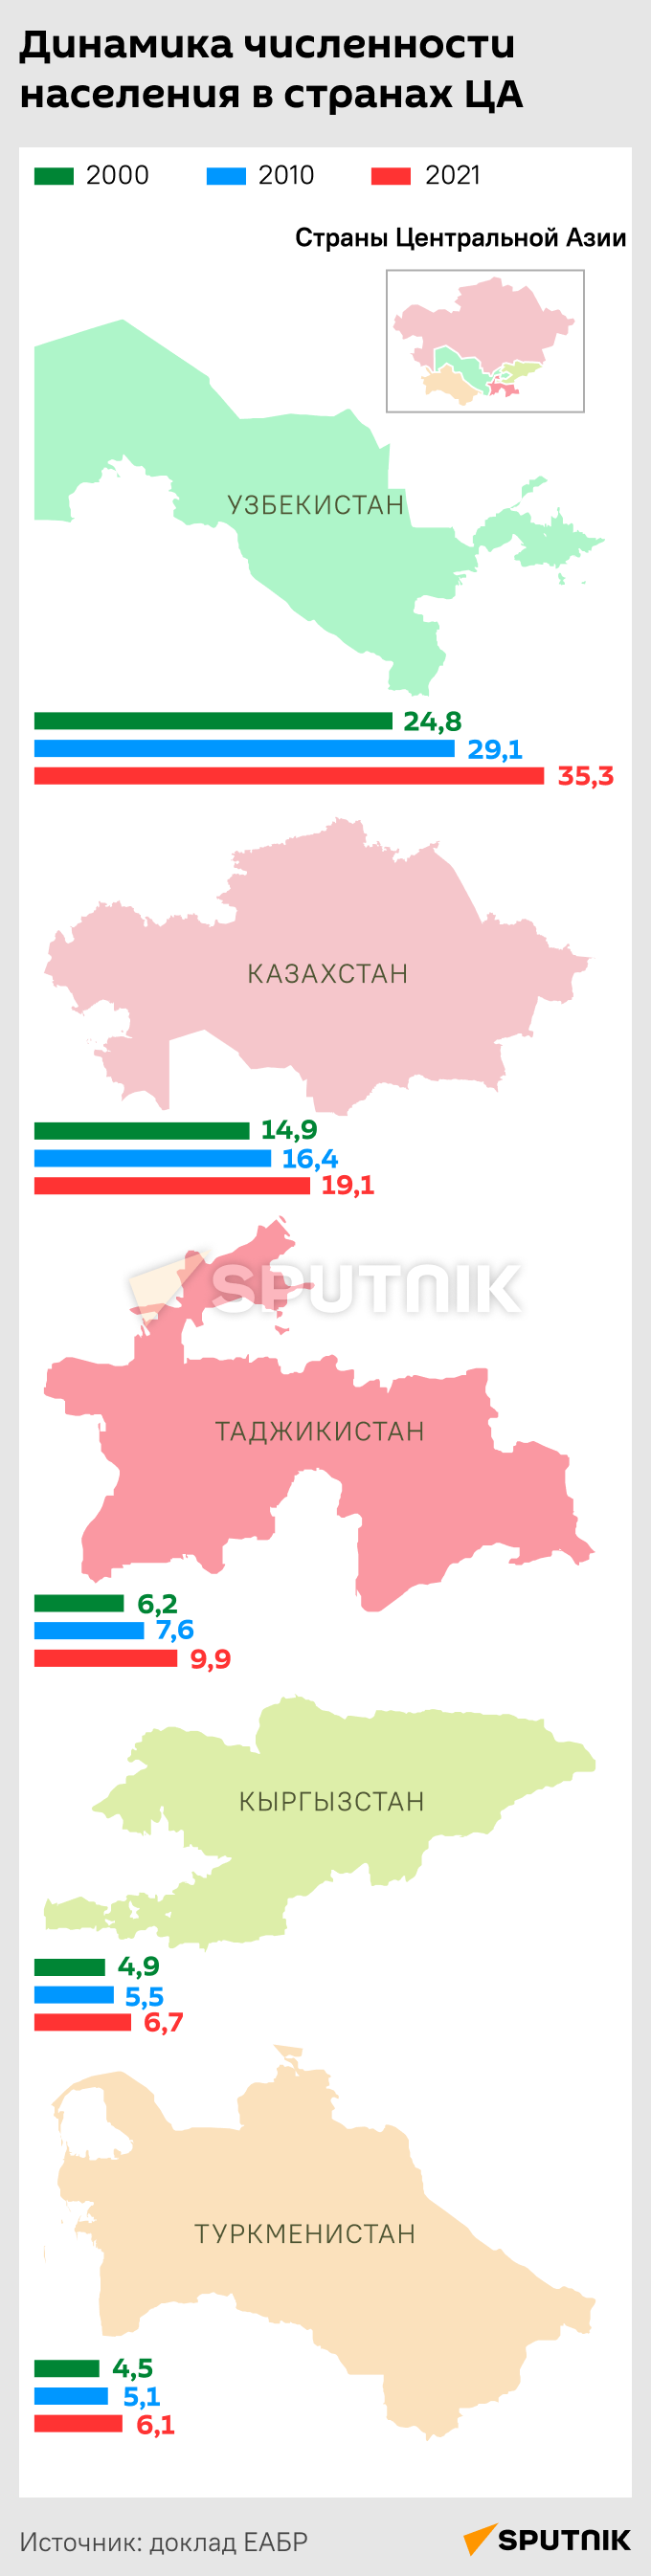 Динамика численности населения в странах ЦА - Sputnik Таджикистан